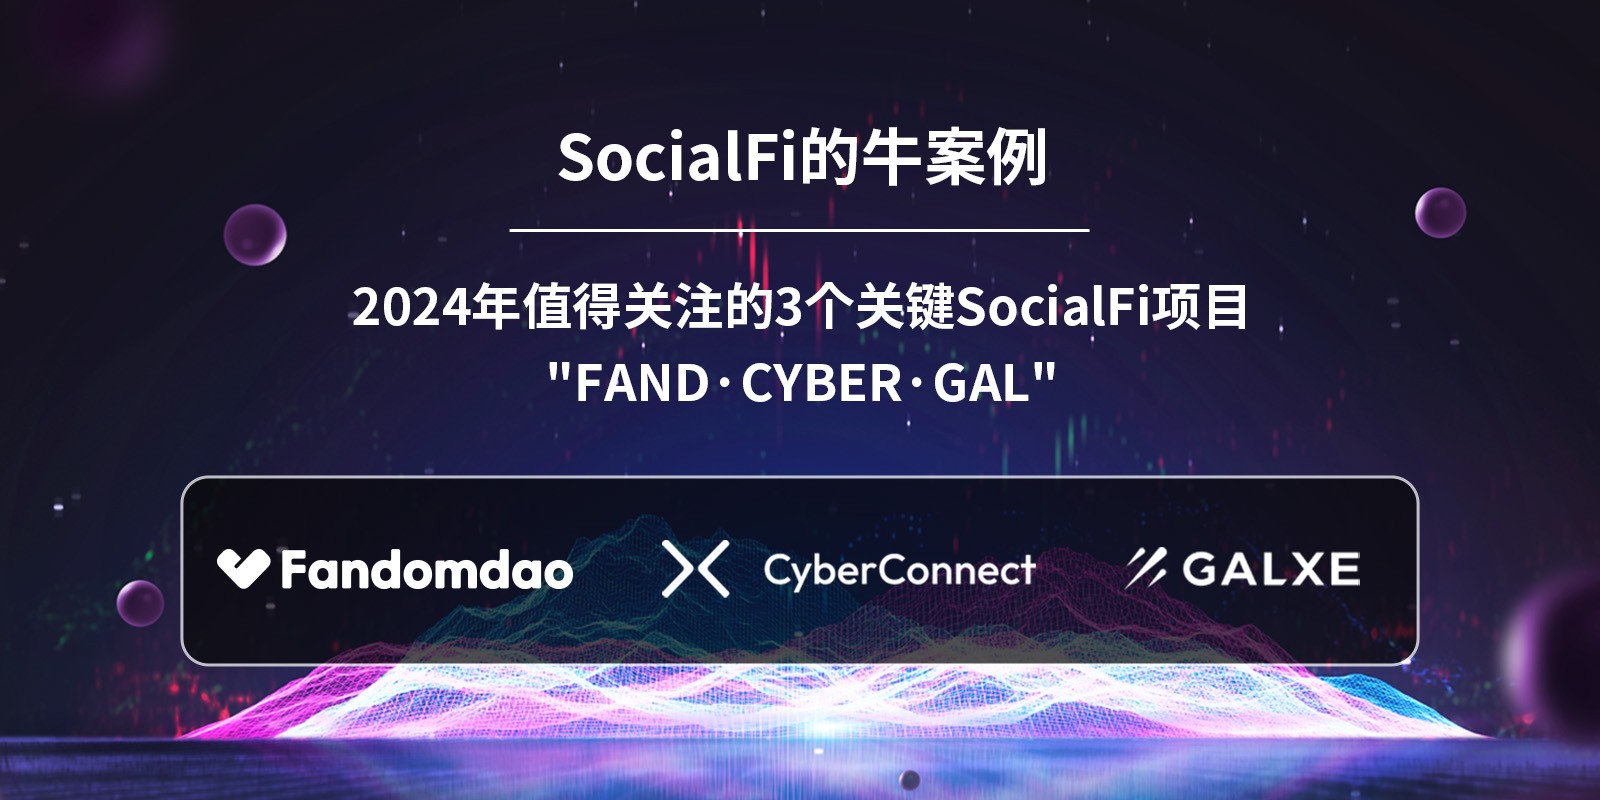 Fandomdao：2024年黑马SocialFi加密项目 早期参与者的潜在机会